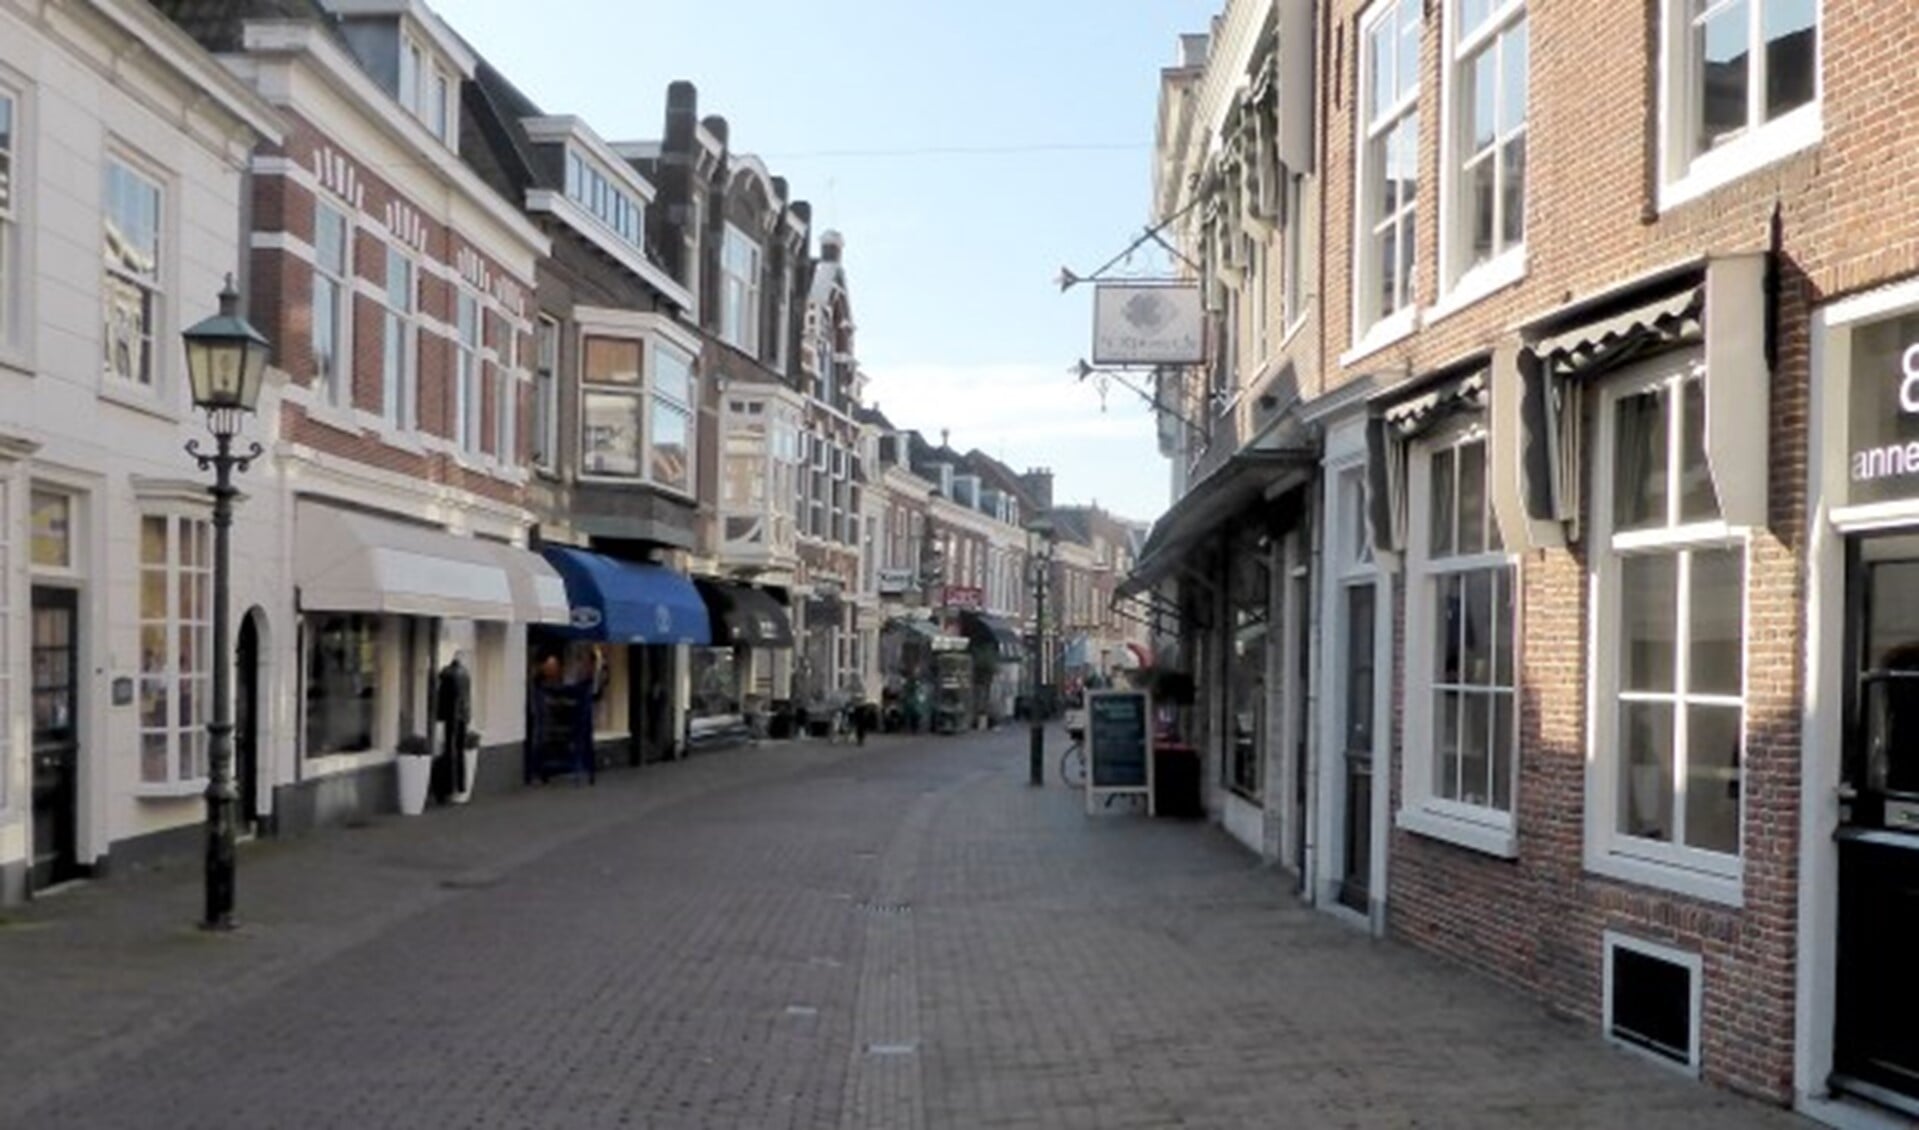 De Herenstraat als middelpunt van het oude centrum van Voorburg (archieffoto).